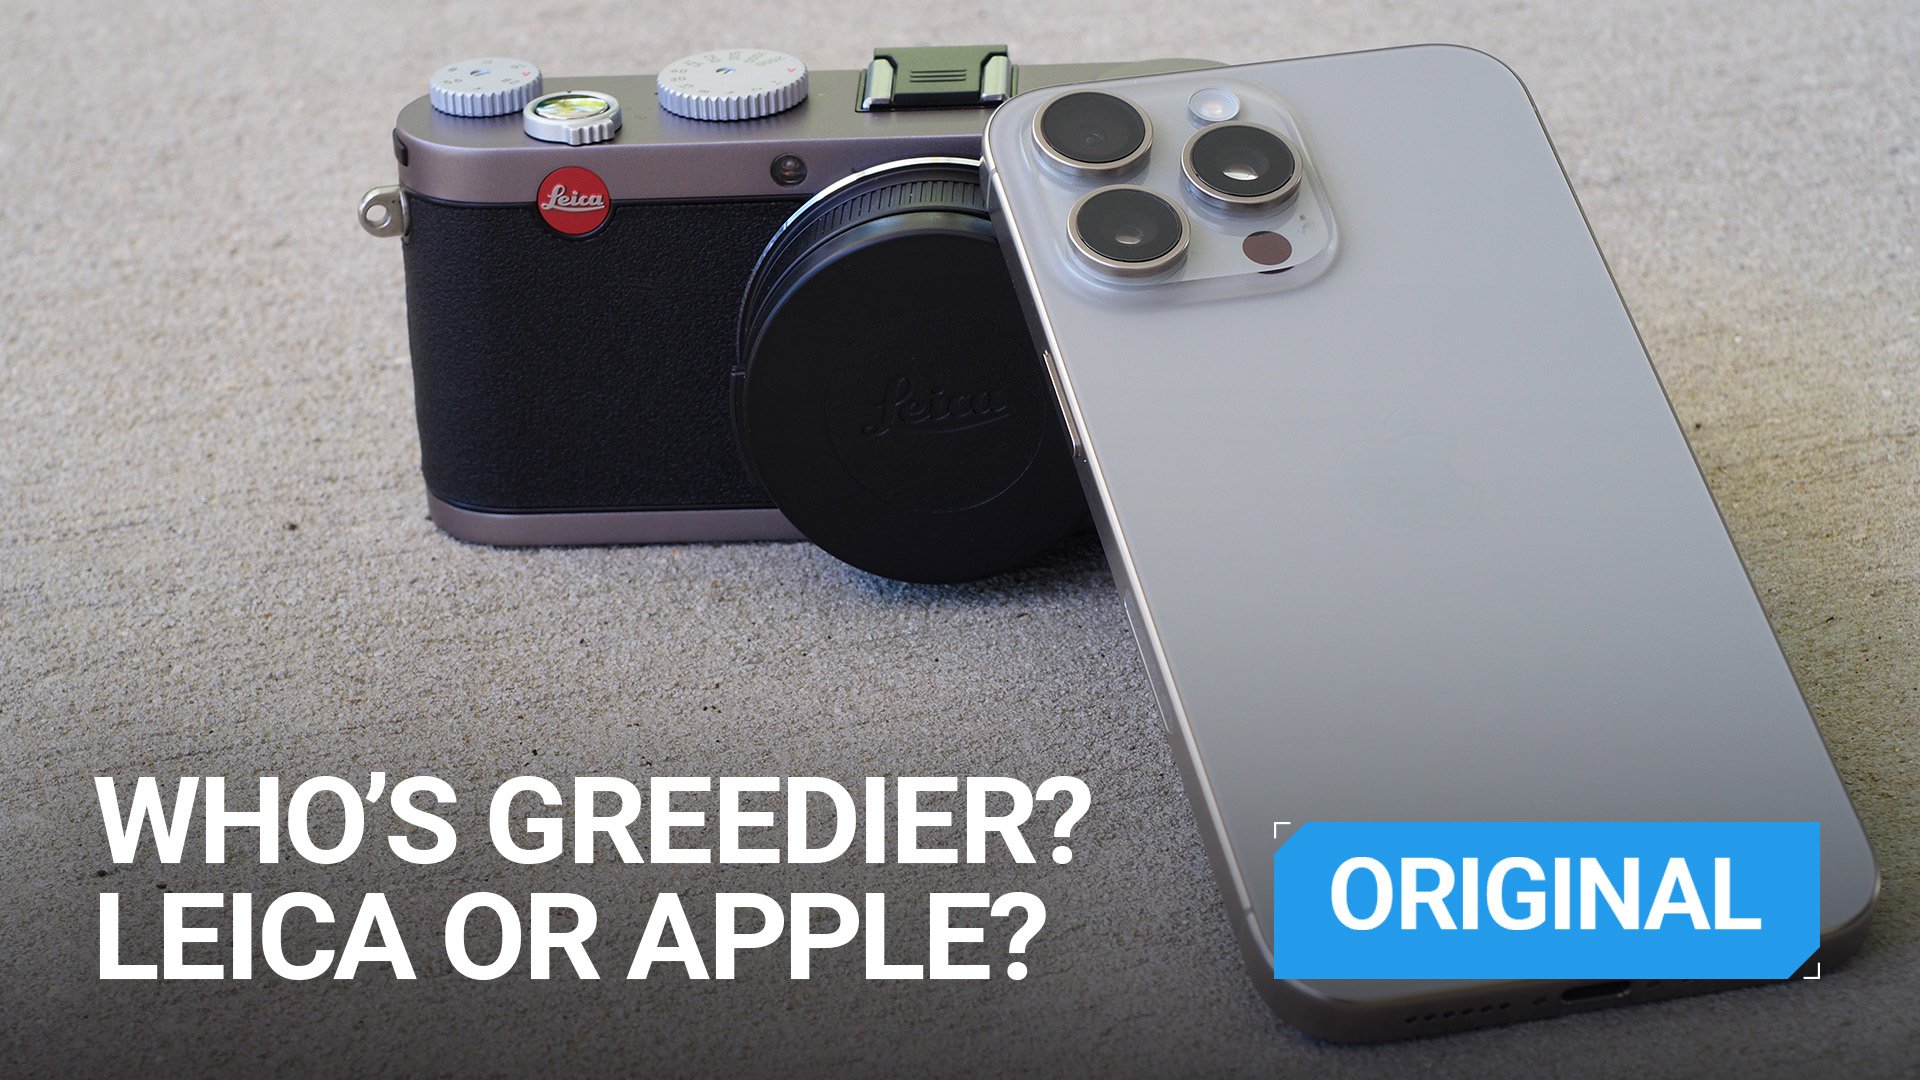 Apple kontra Leica: czy któraś z tych marek pożera pieniądze?